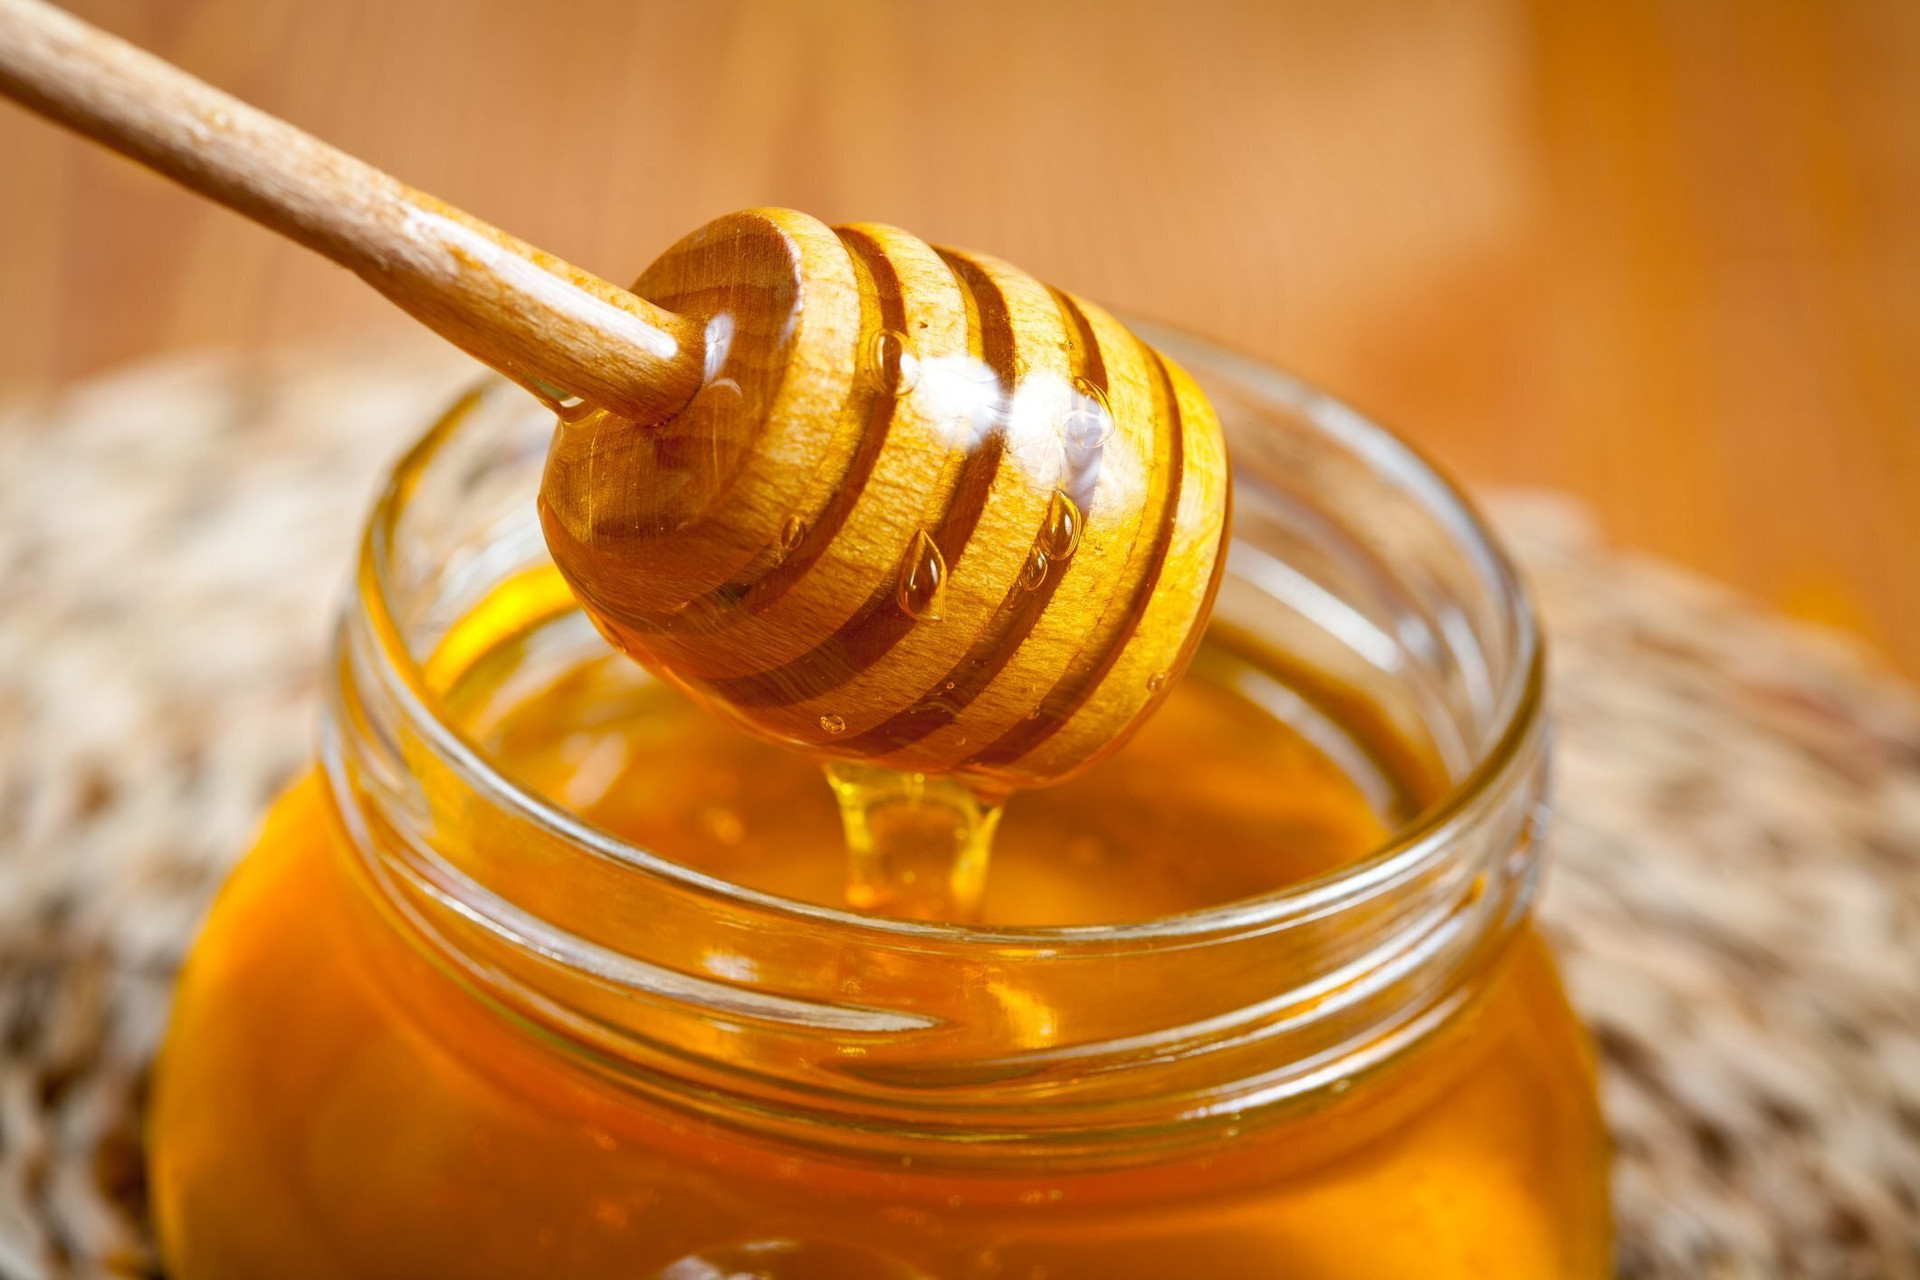 Nếu để mật ong trong tủ lạnh, nhiệt độ và độ ẩm sẽ khiến mật ong bị kết tinh và kém chất lượng. (Ảnh: Taste of Home)